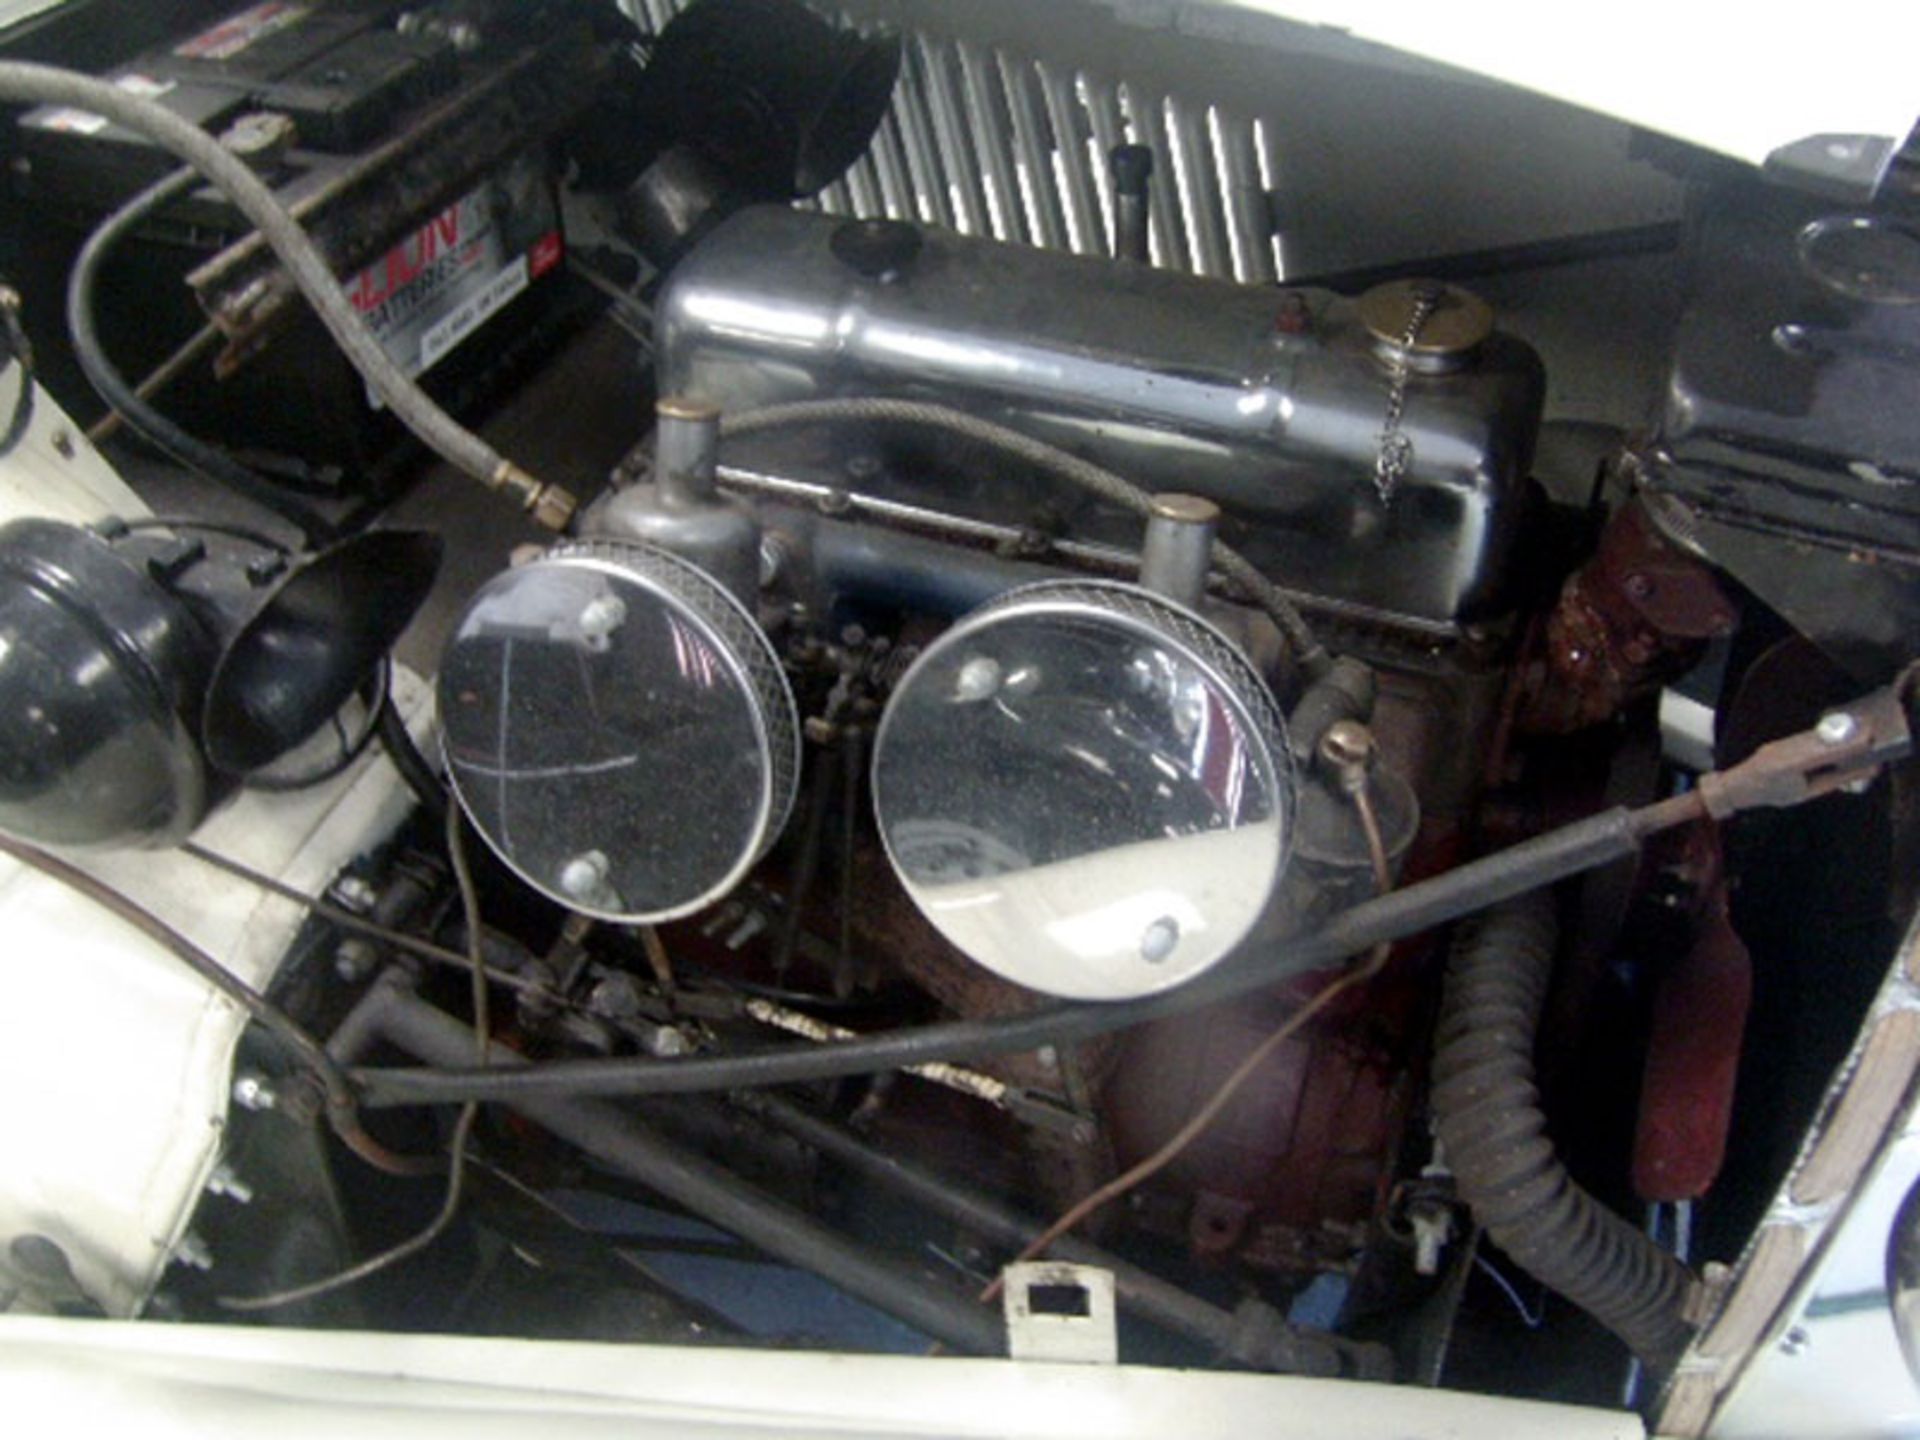 1952 MG TD - Image 6 of 6